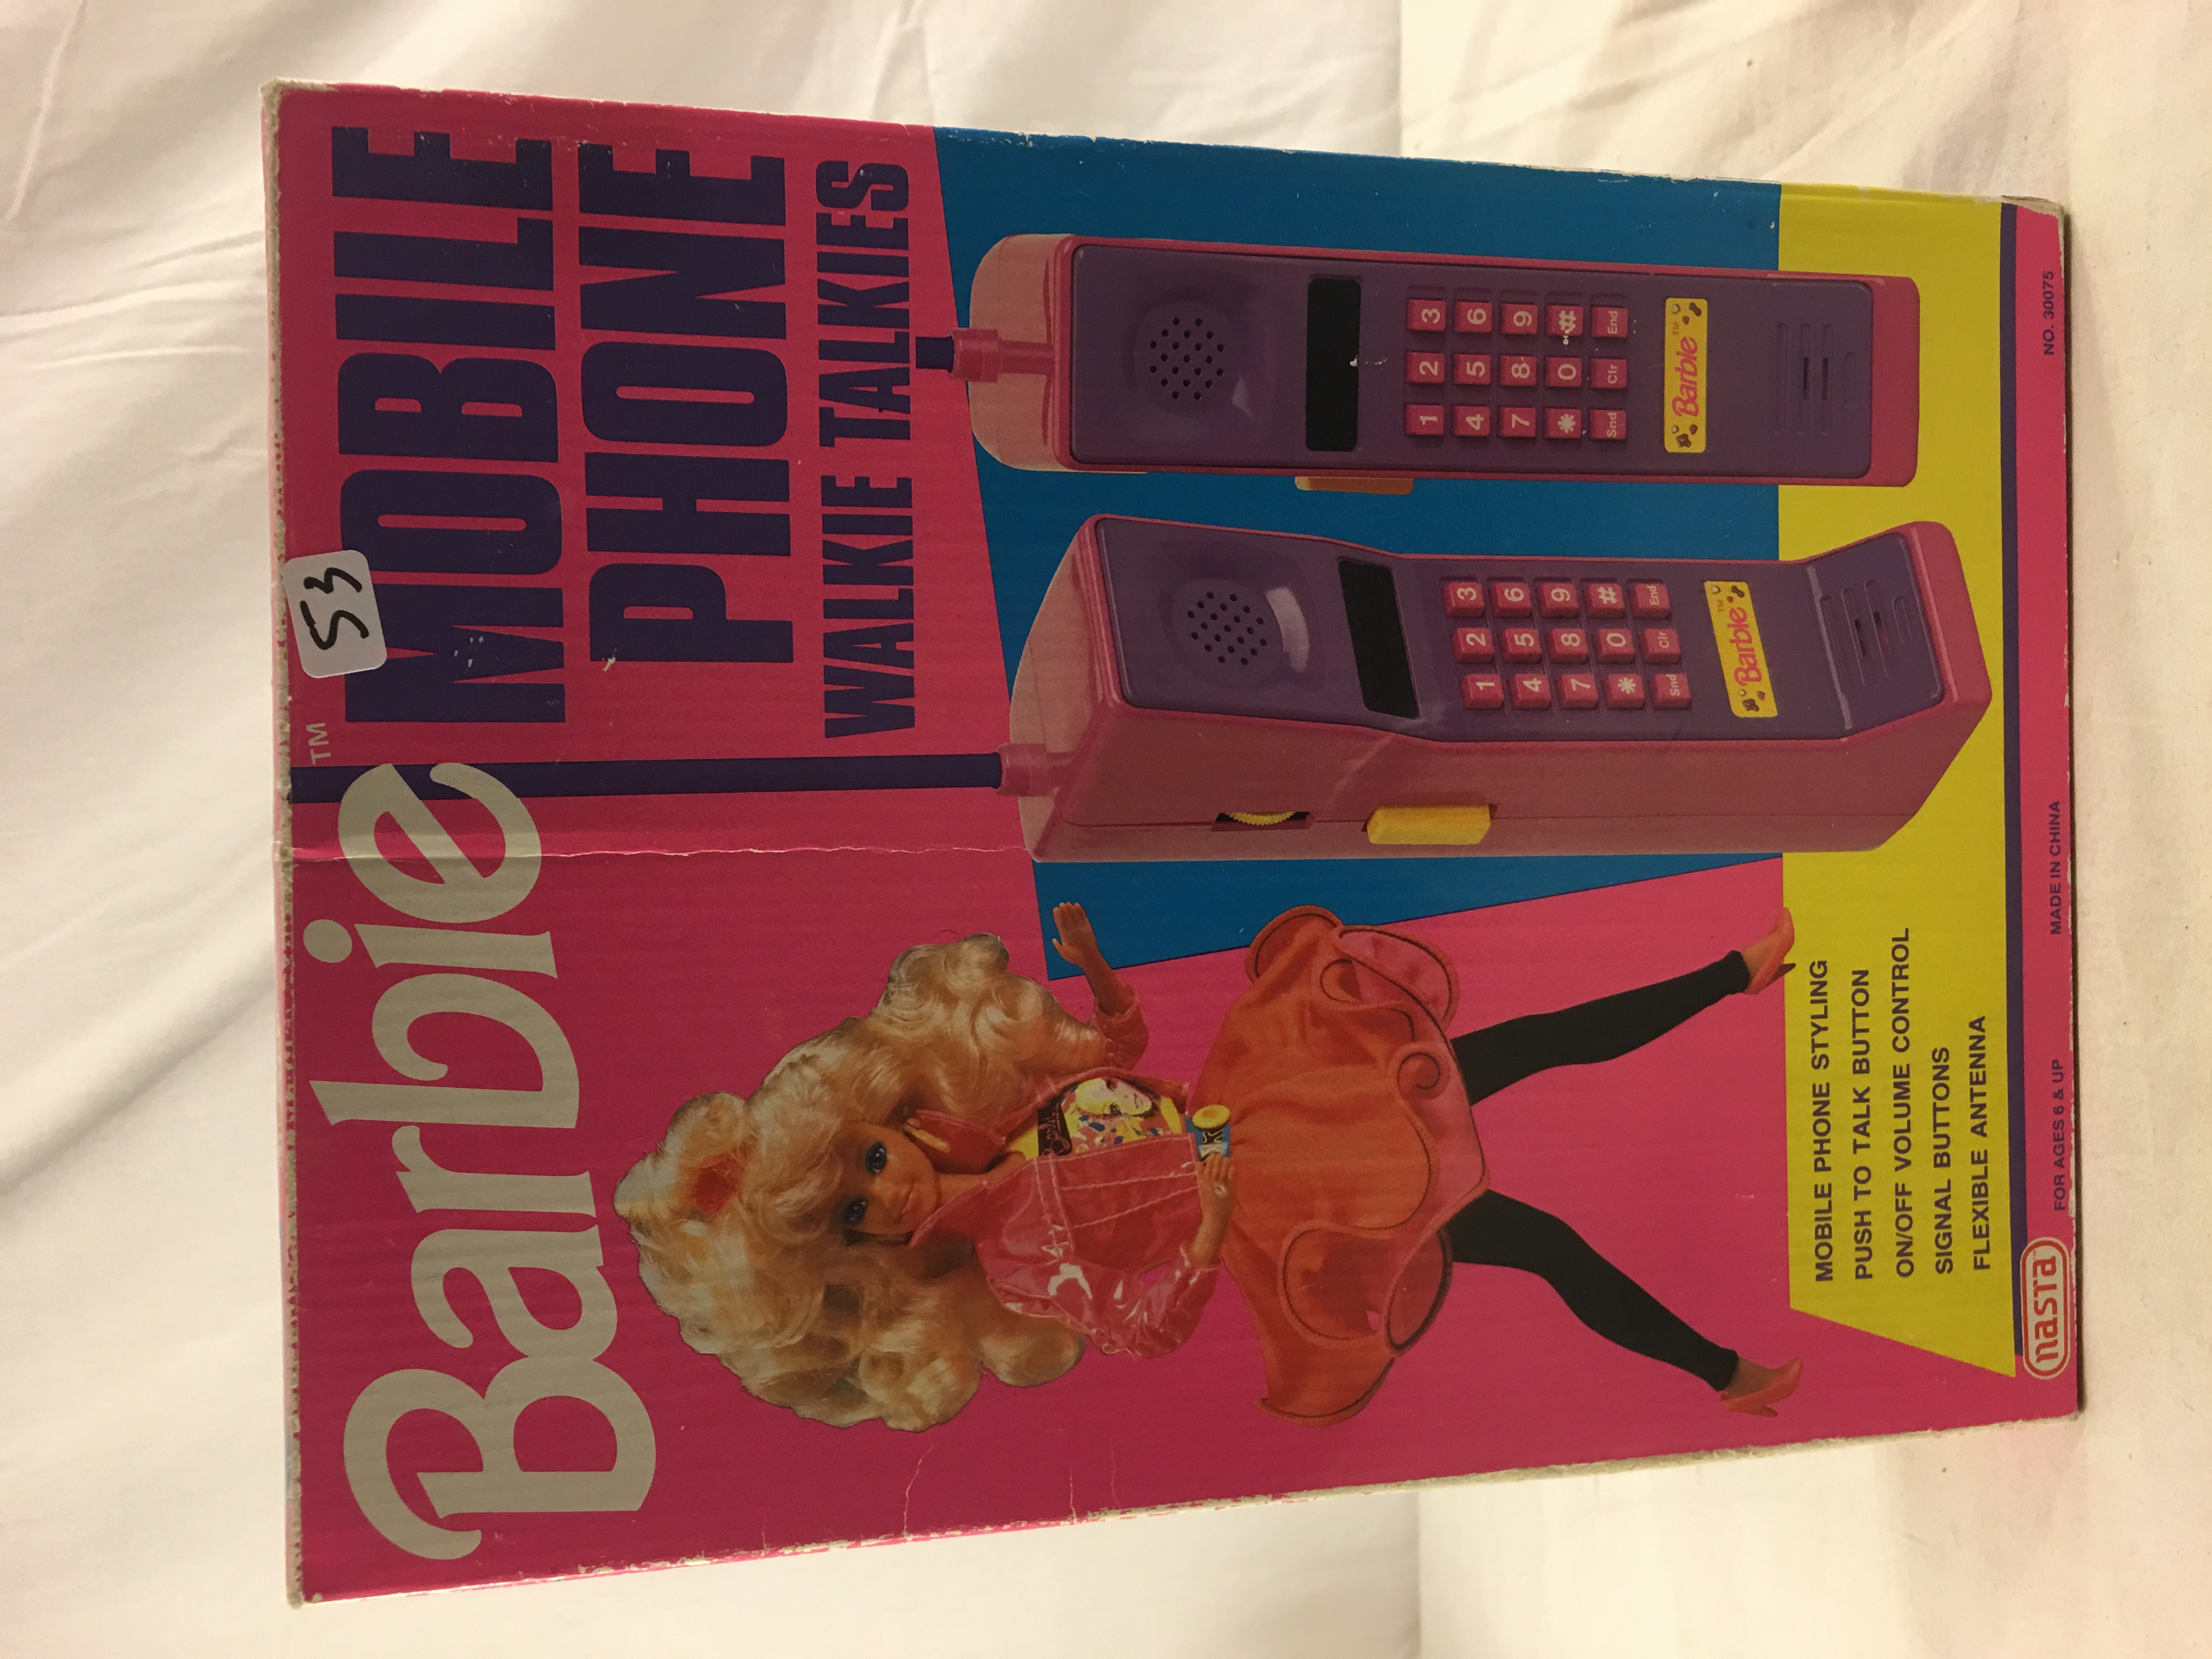 Collector Vintages Nasta Barbie Mobile Phone